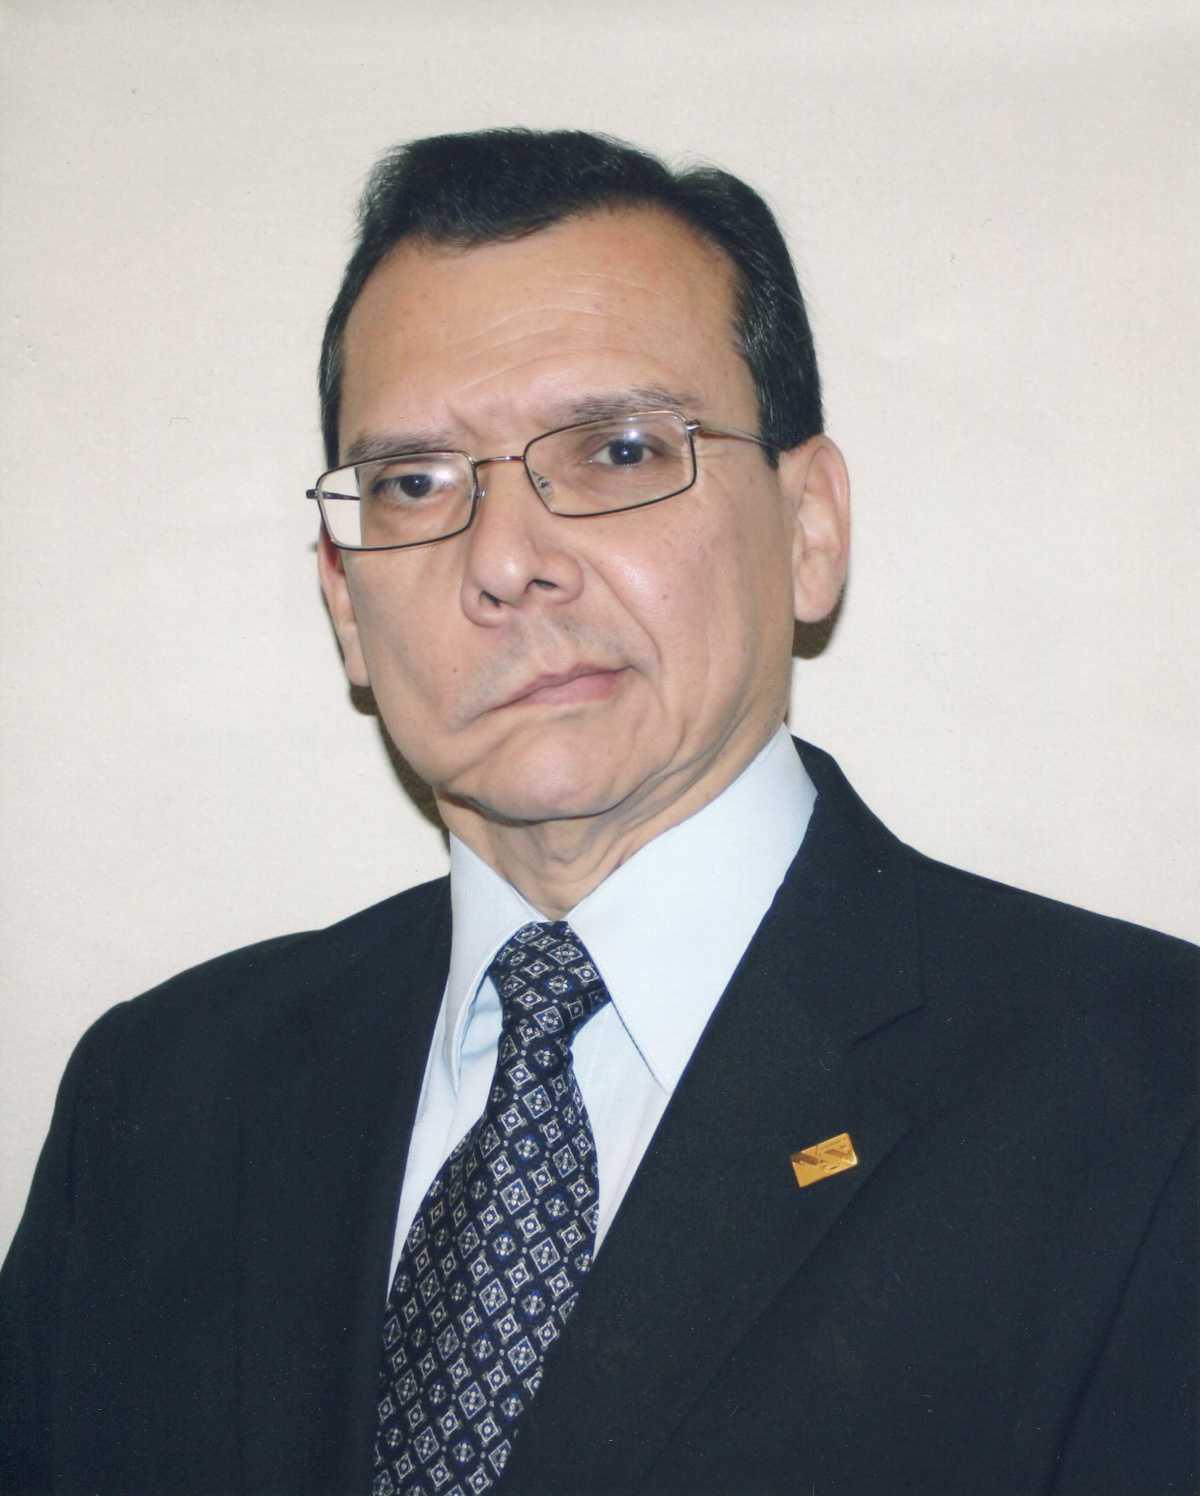 DR. ANDRES SANCHEZ GONZALEZ